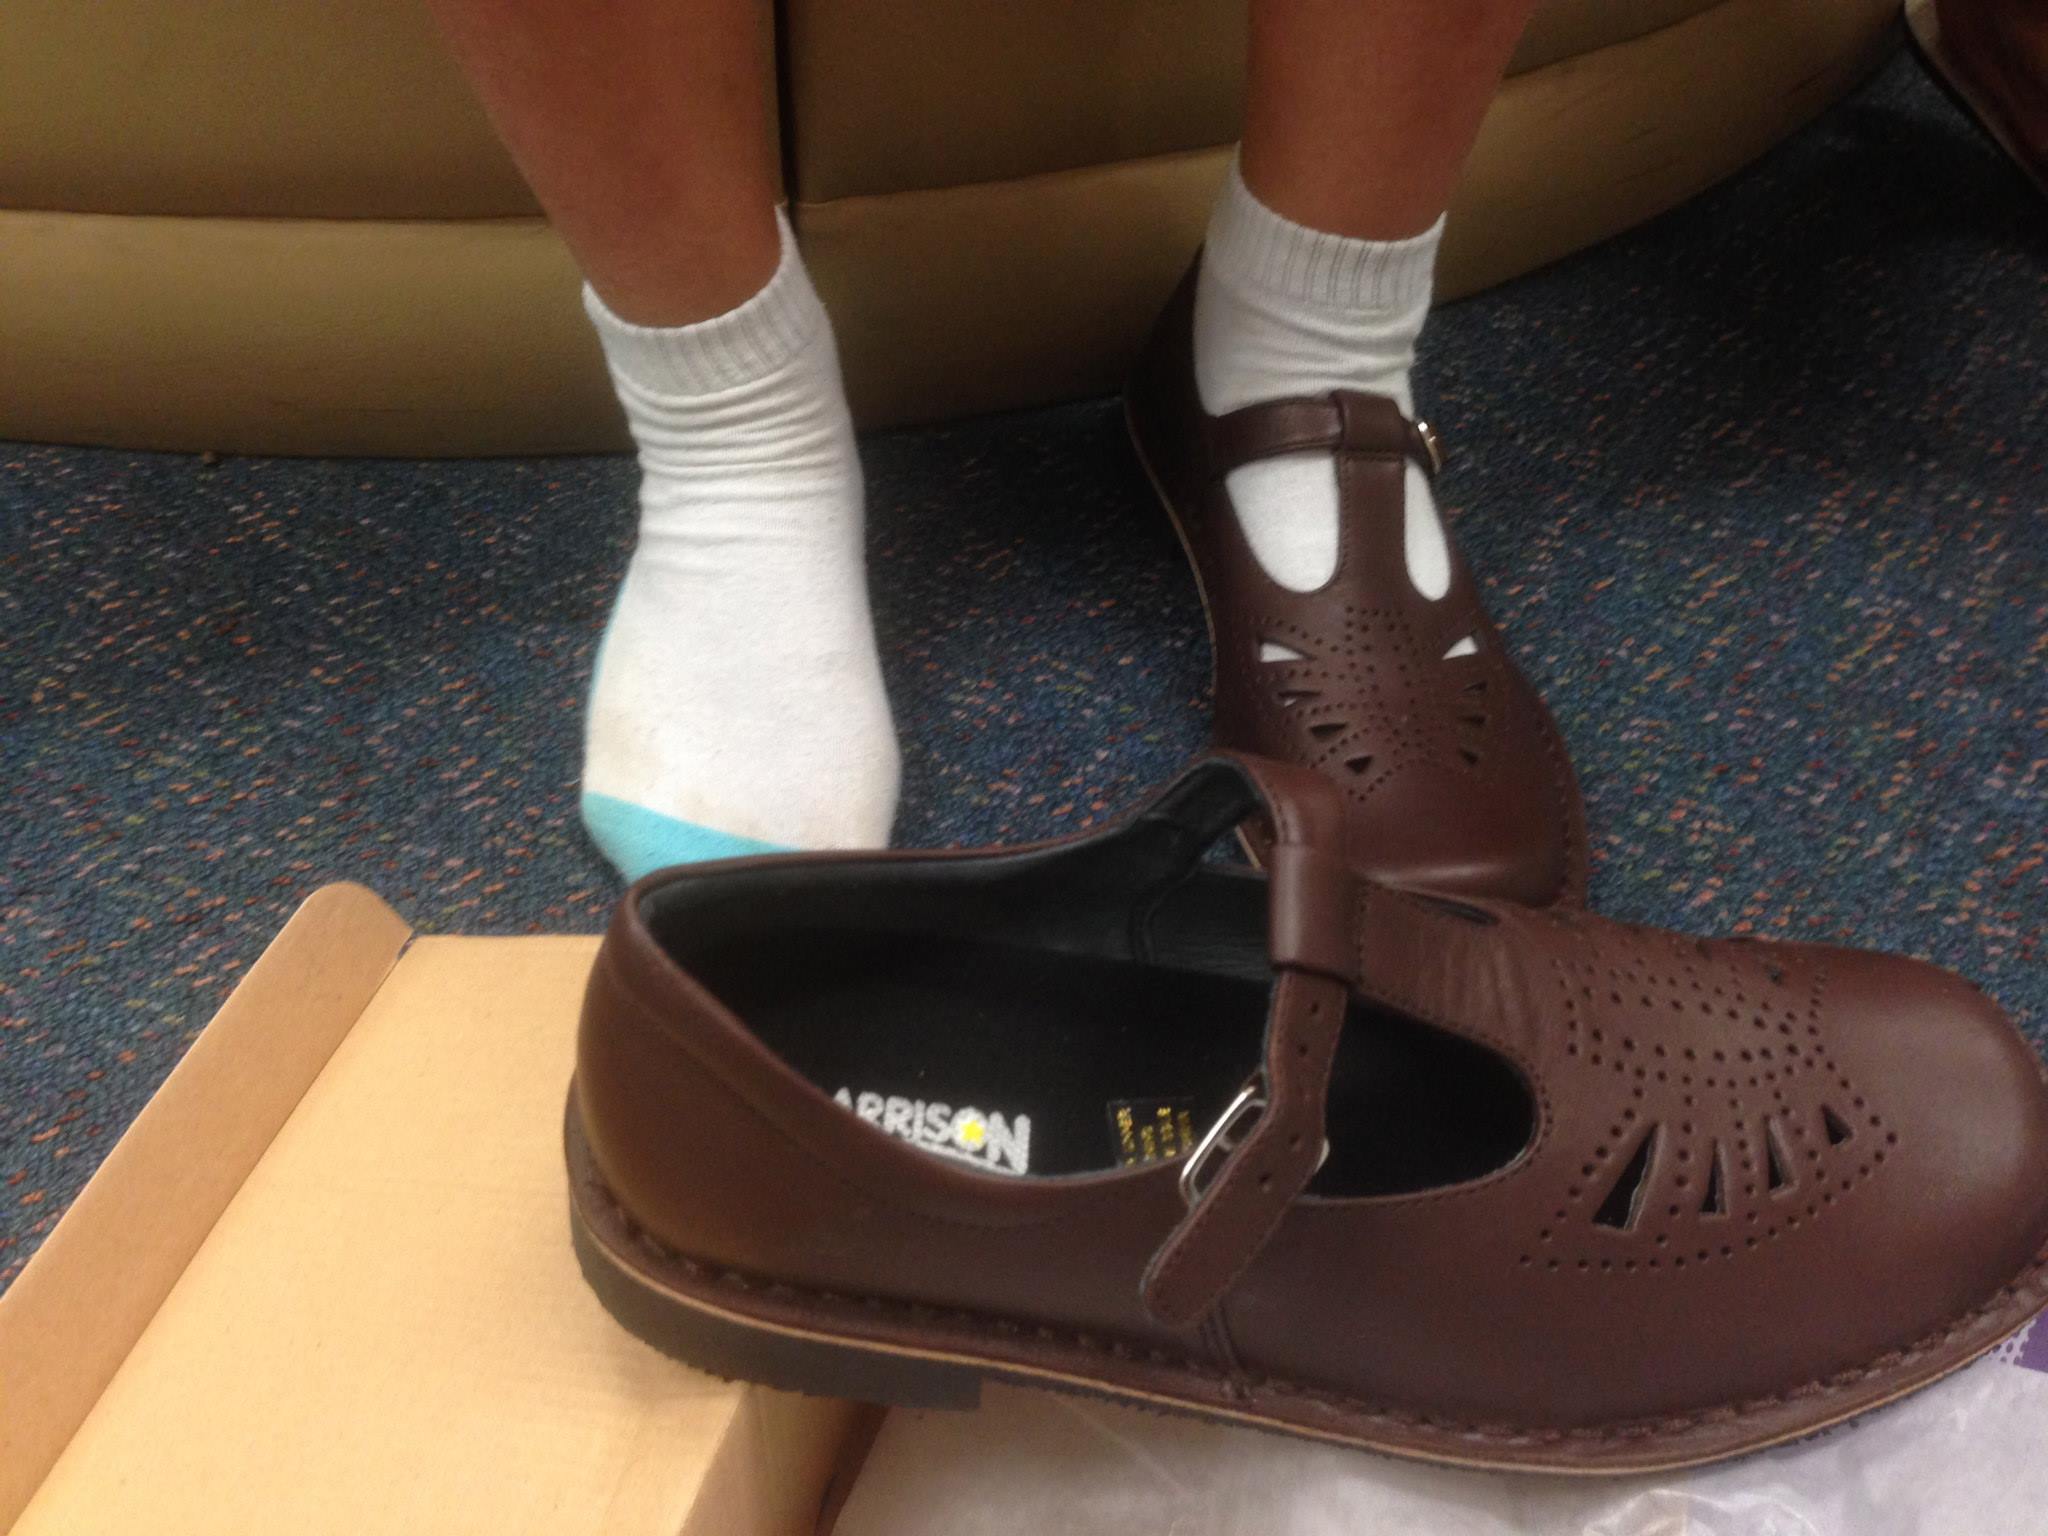 clarks brown school shoes